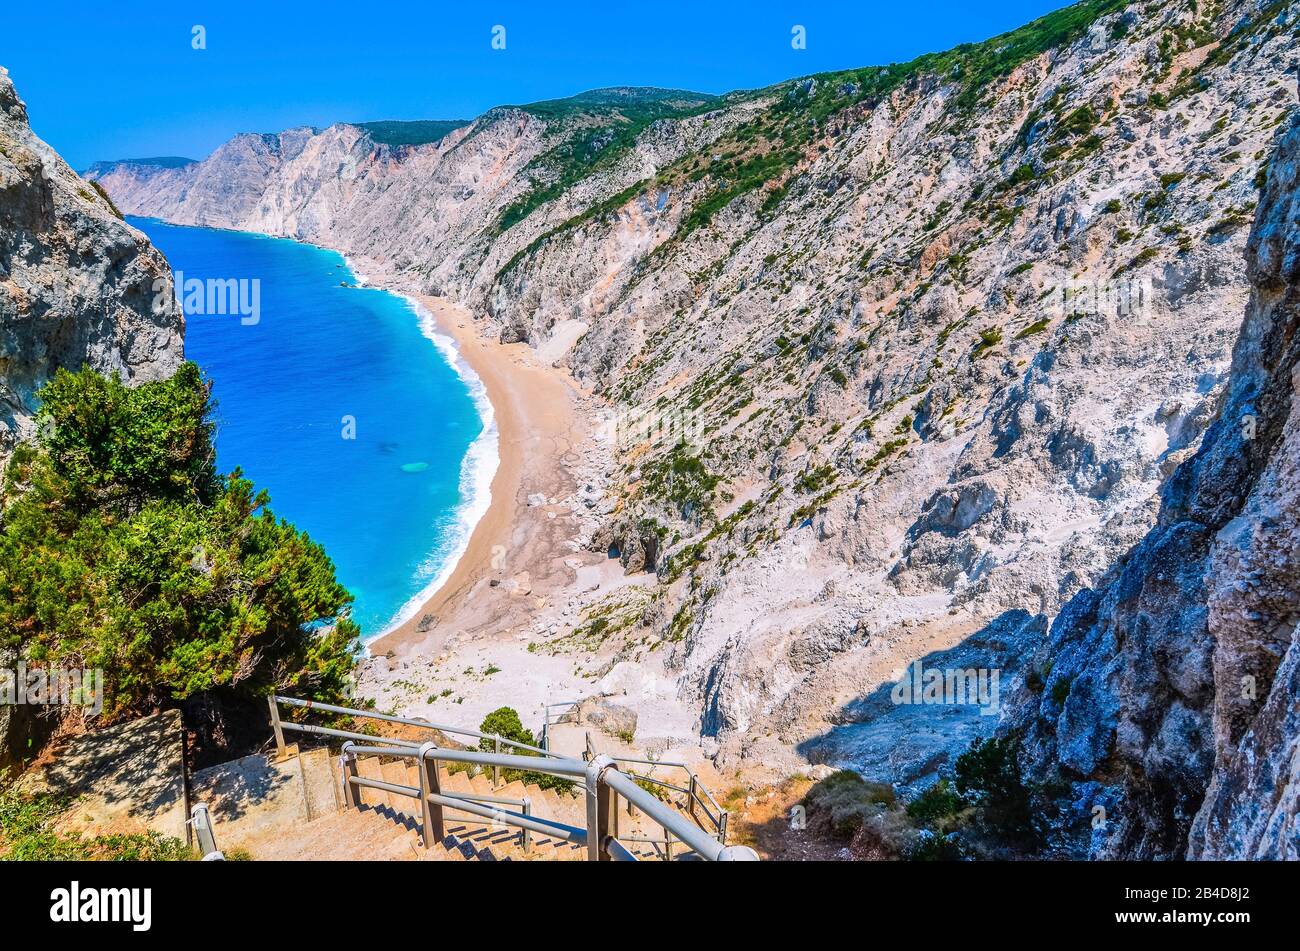 Île de Céphalonie, célèbre plage de Platia Ammos, Grèce Banque D'Images